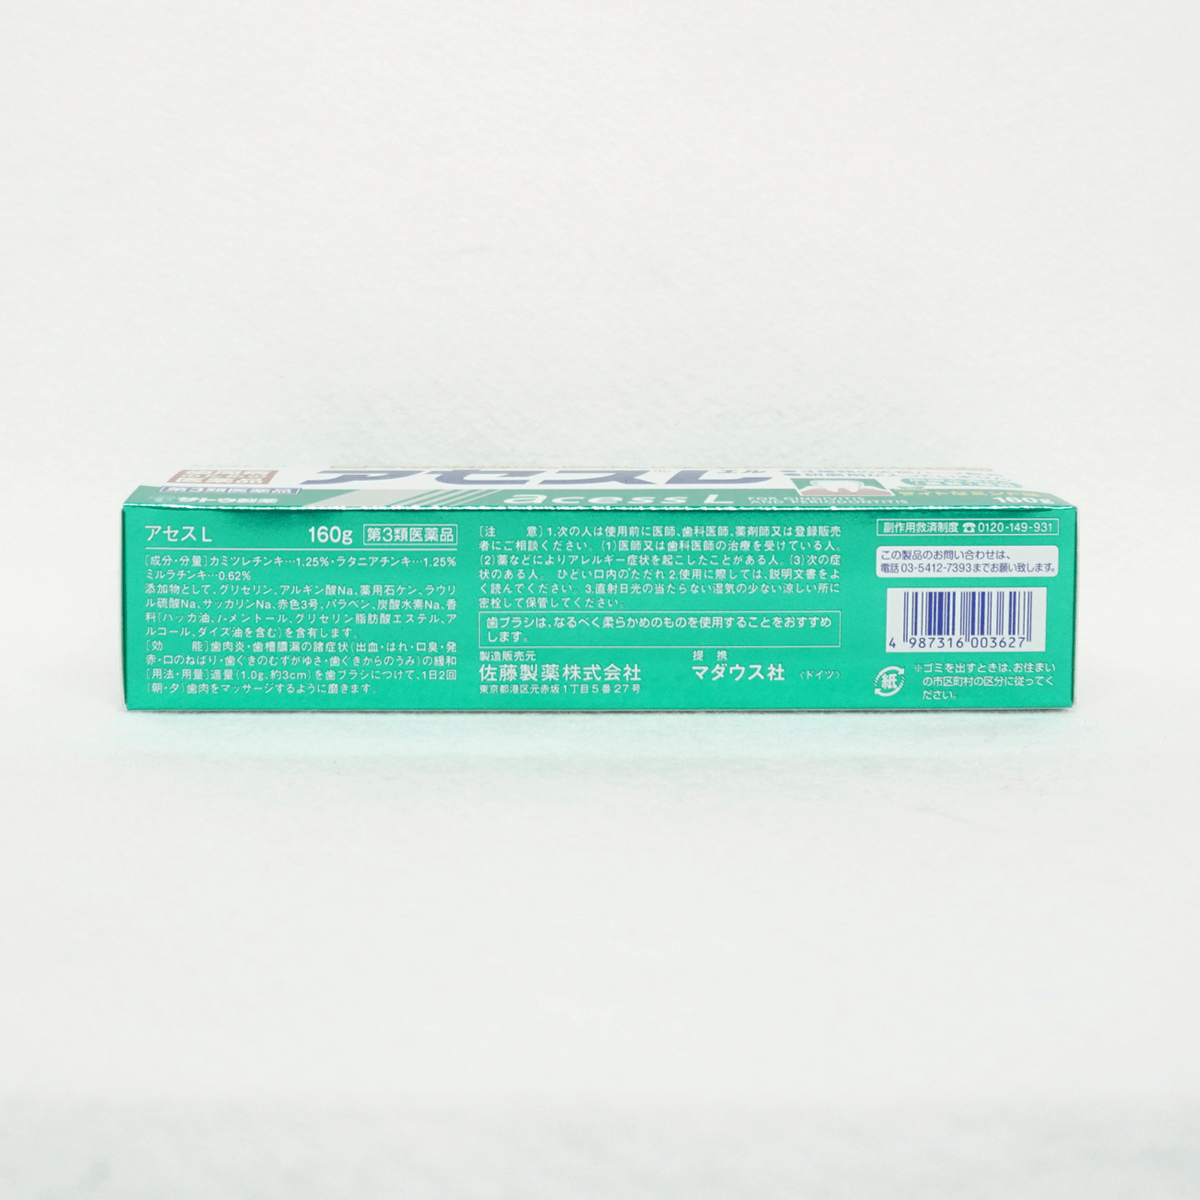 【第3類醫藥品】佐藤製藥 SATO 雅雪舒 AcessL 牙周護理 淡薄荷味 牙膏 160g